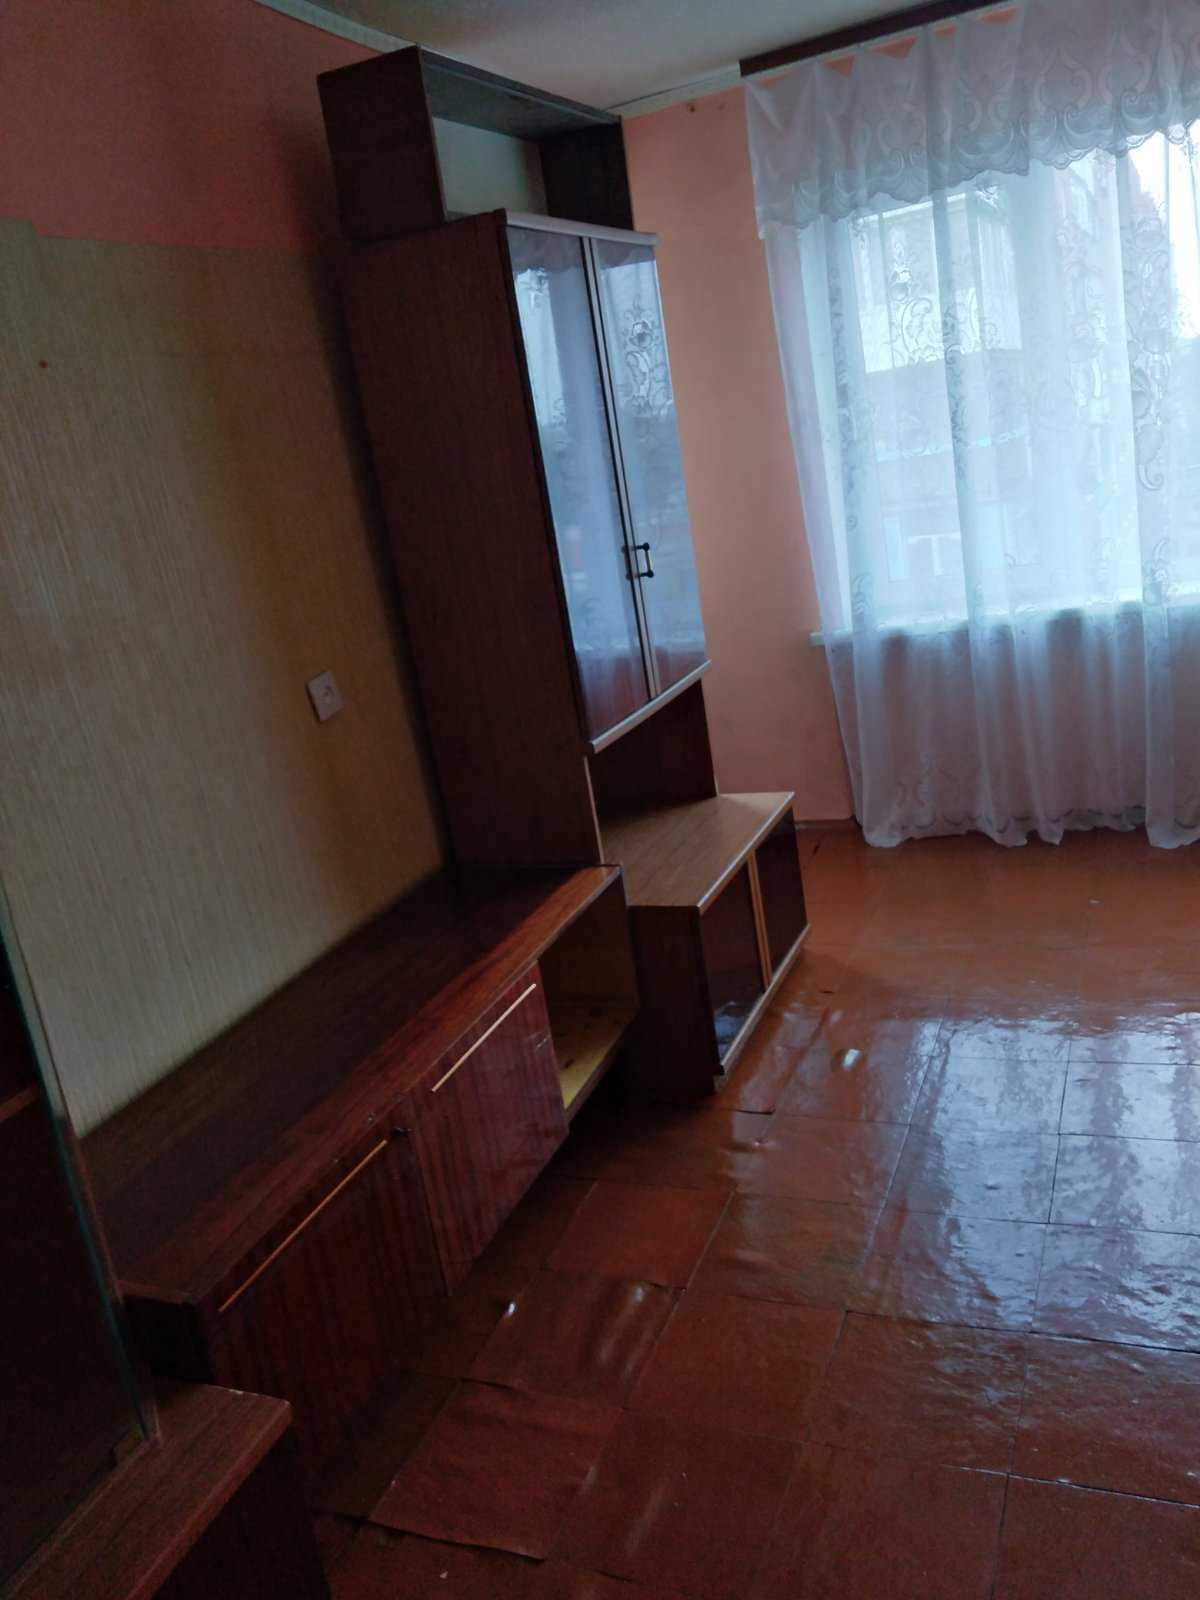 Хозяин. 3-хкомнатная квартиру в Покровске Донецкой области